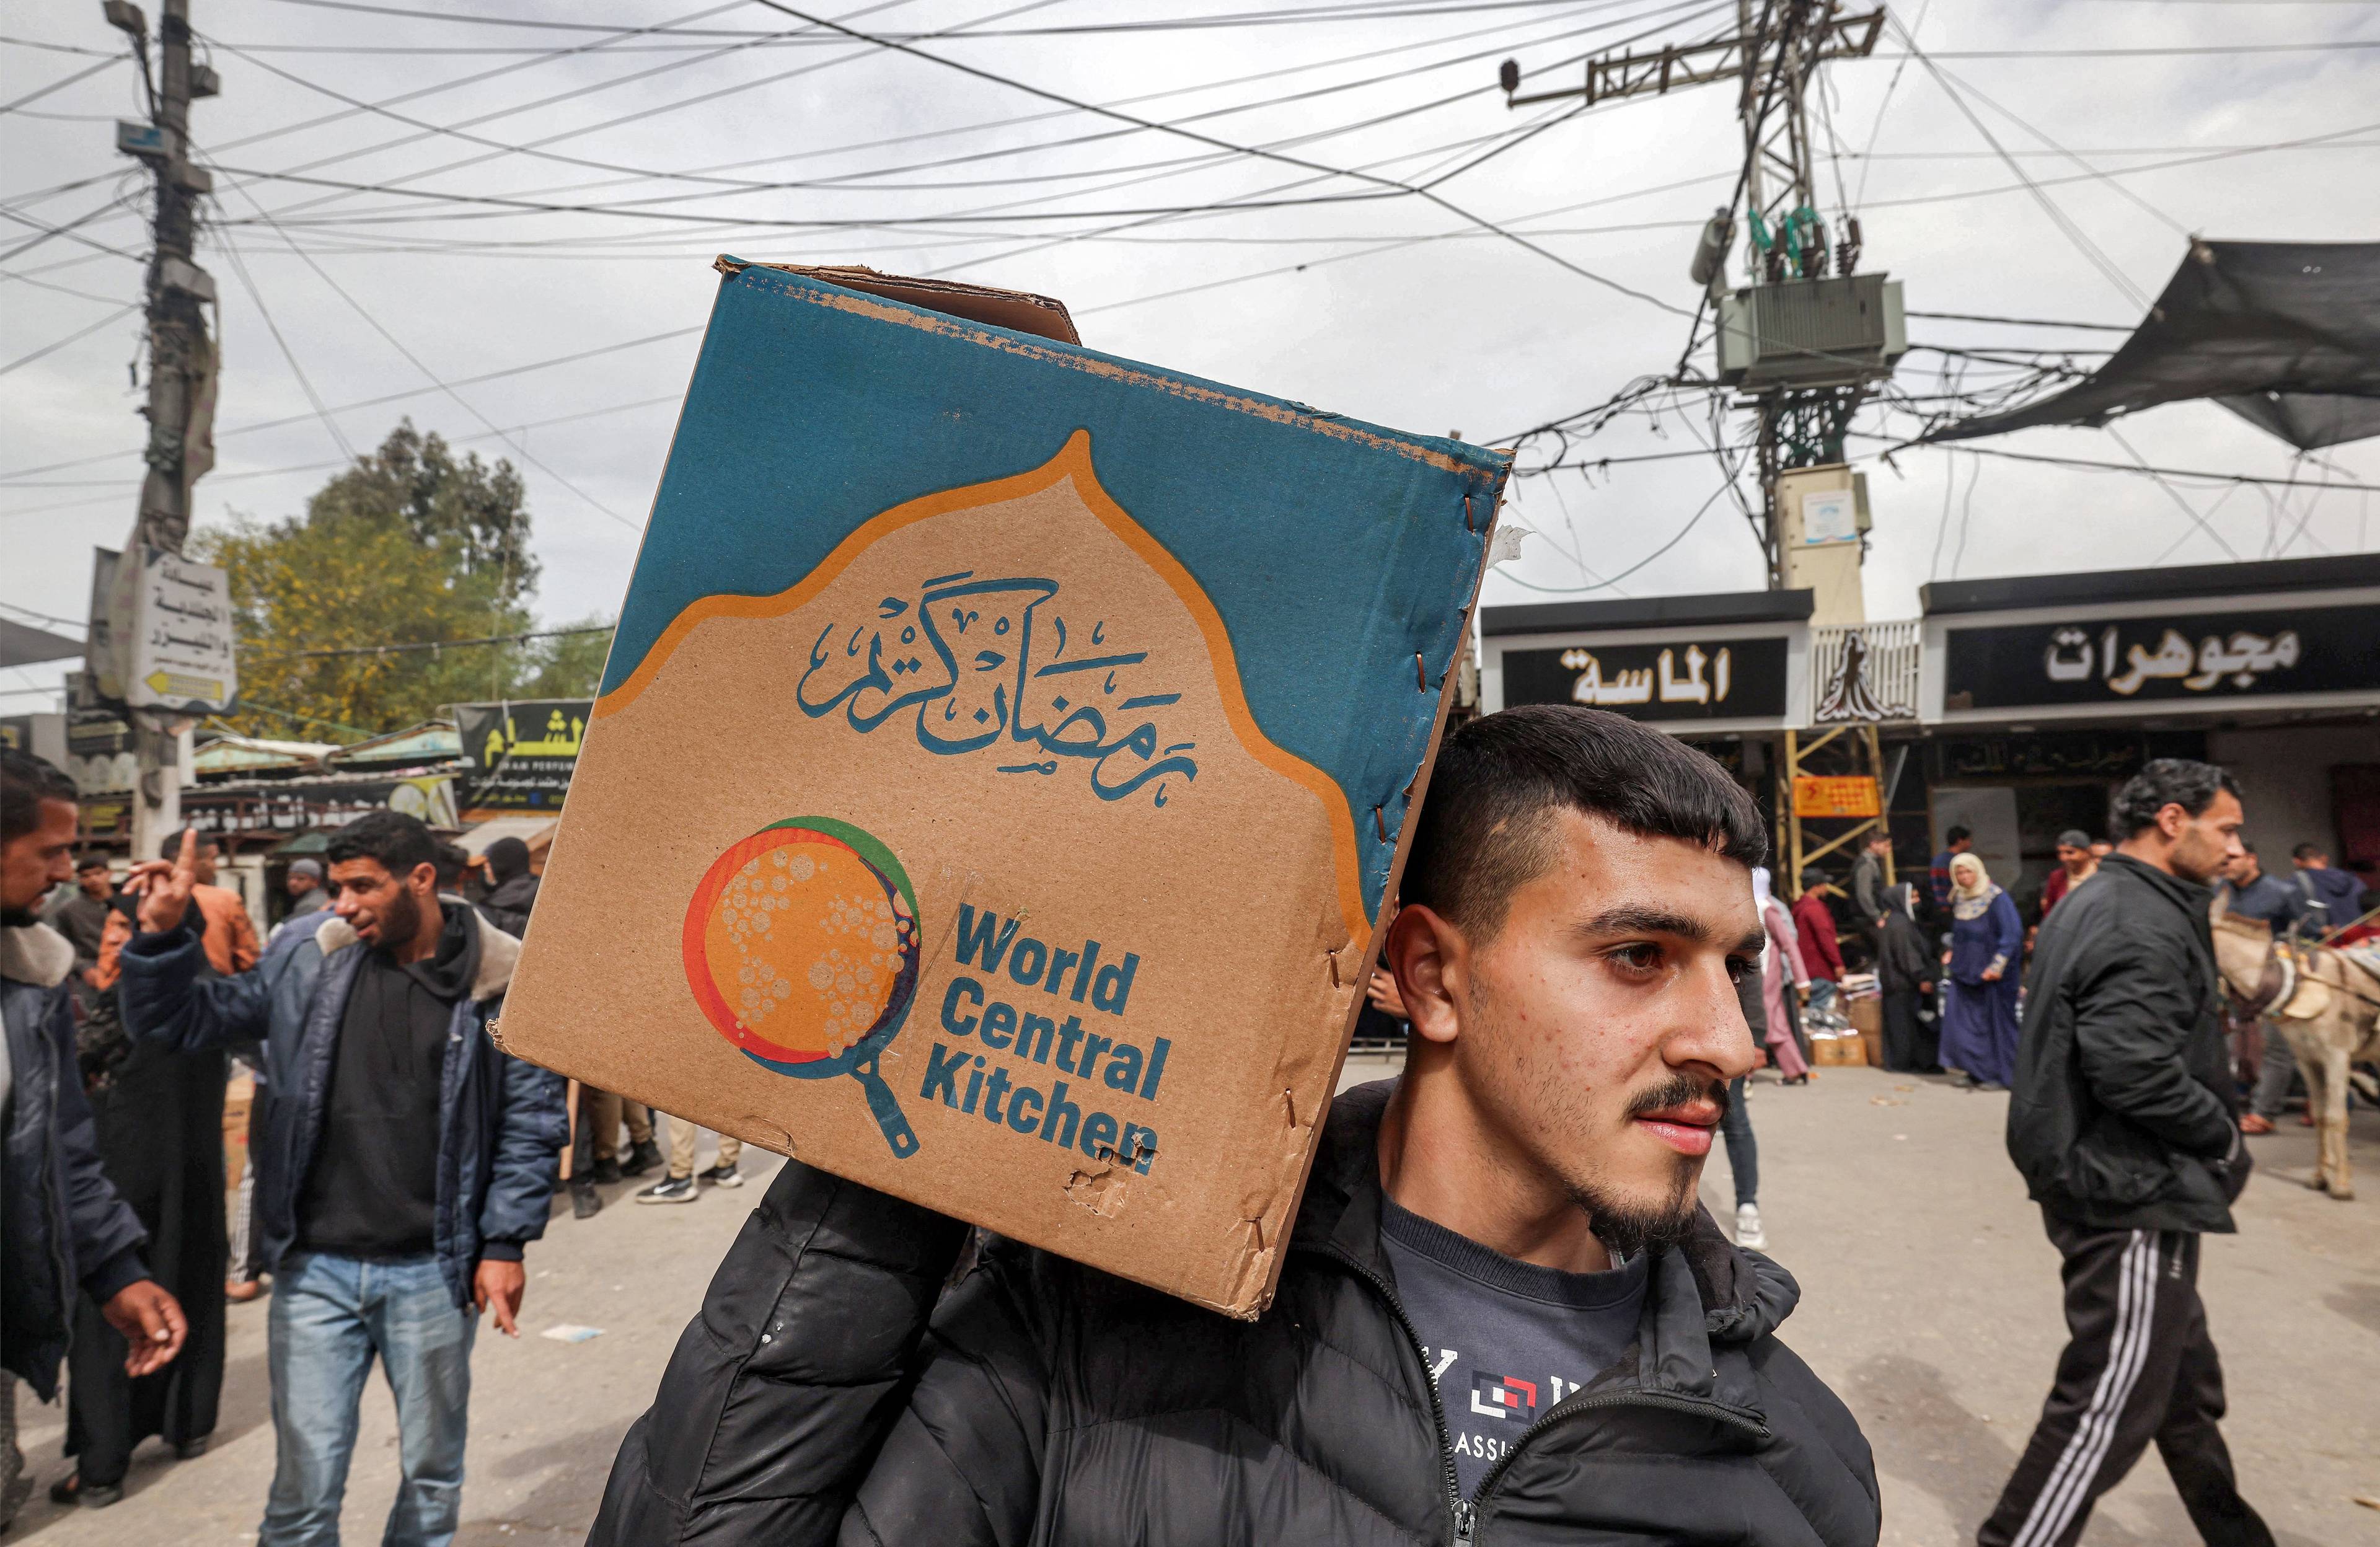 Palestyński mężczyzna trzyma na ramieniu pudło z napisem "World Central Kitchen"